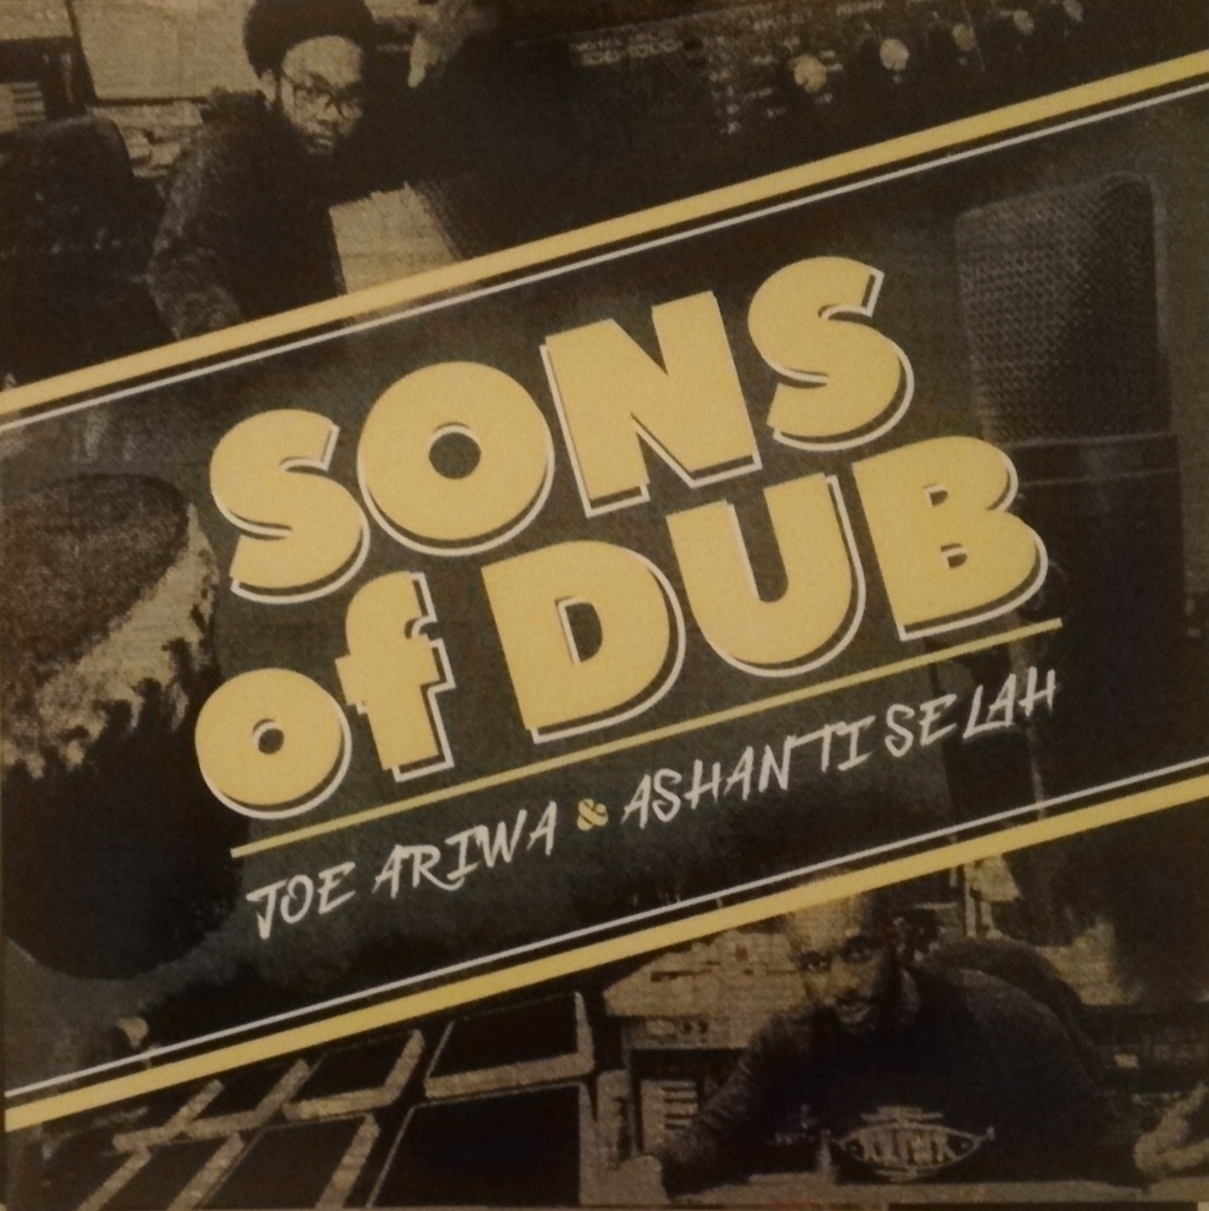 LP JOE ARIWA & ASHANTI SELAH - SONS OF DUB